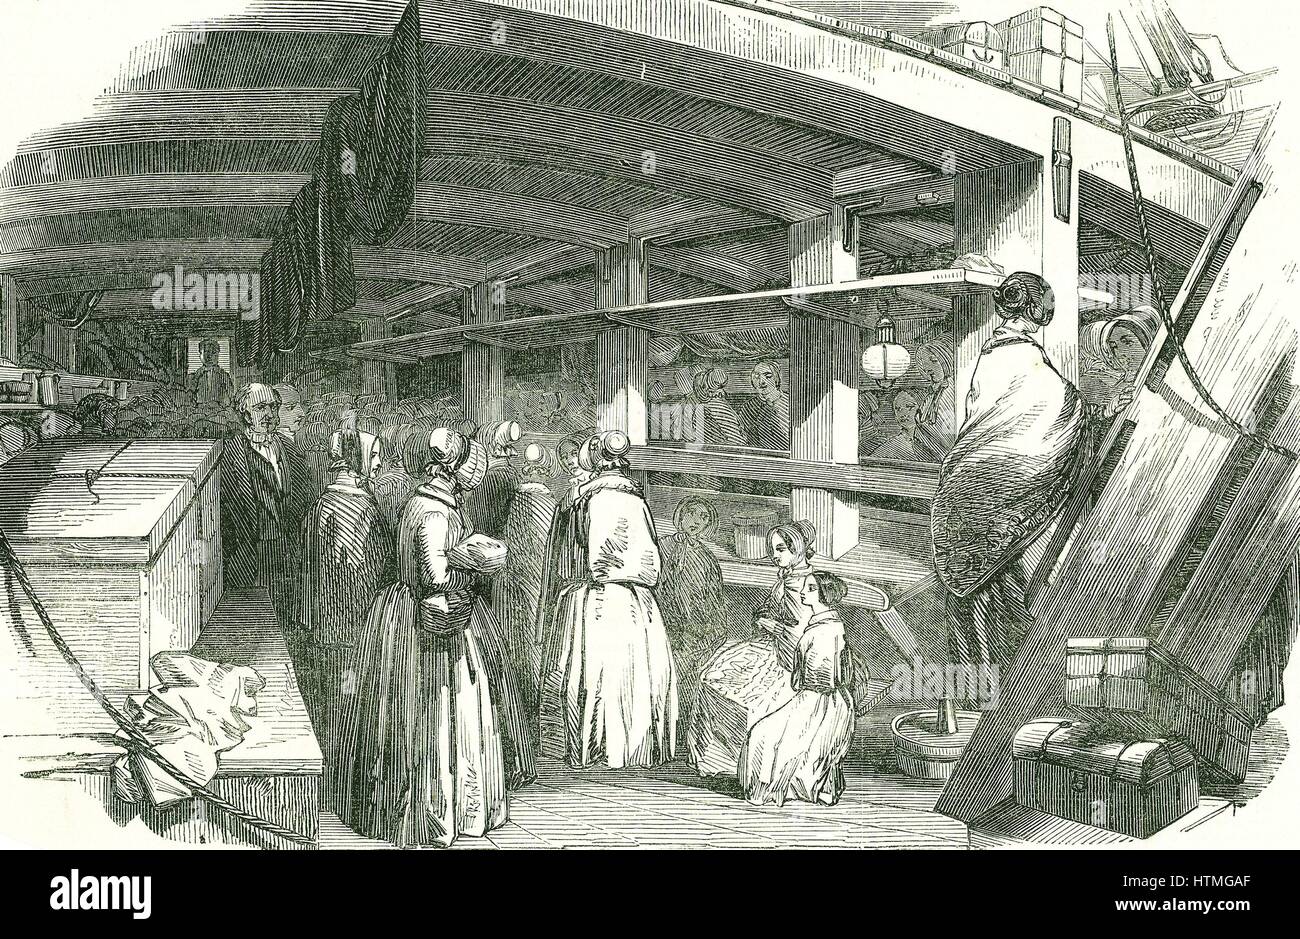 Scena tra i ponti su un emigrante nave adibita al trasporto di poveri needlewomen in Australia. A questa data i lavoratori qualificati sono stati sponsorizzati dato passaggi a emigrare verso le colonie. Da 'l'Illustrated London News', 17 agosto 1850. Foto Stock